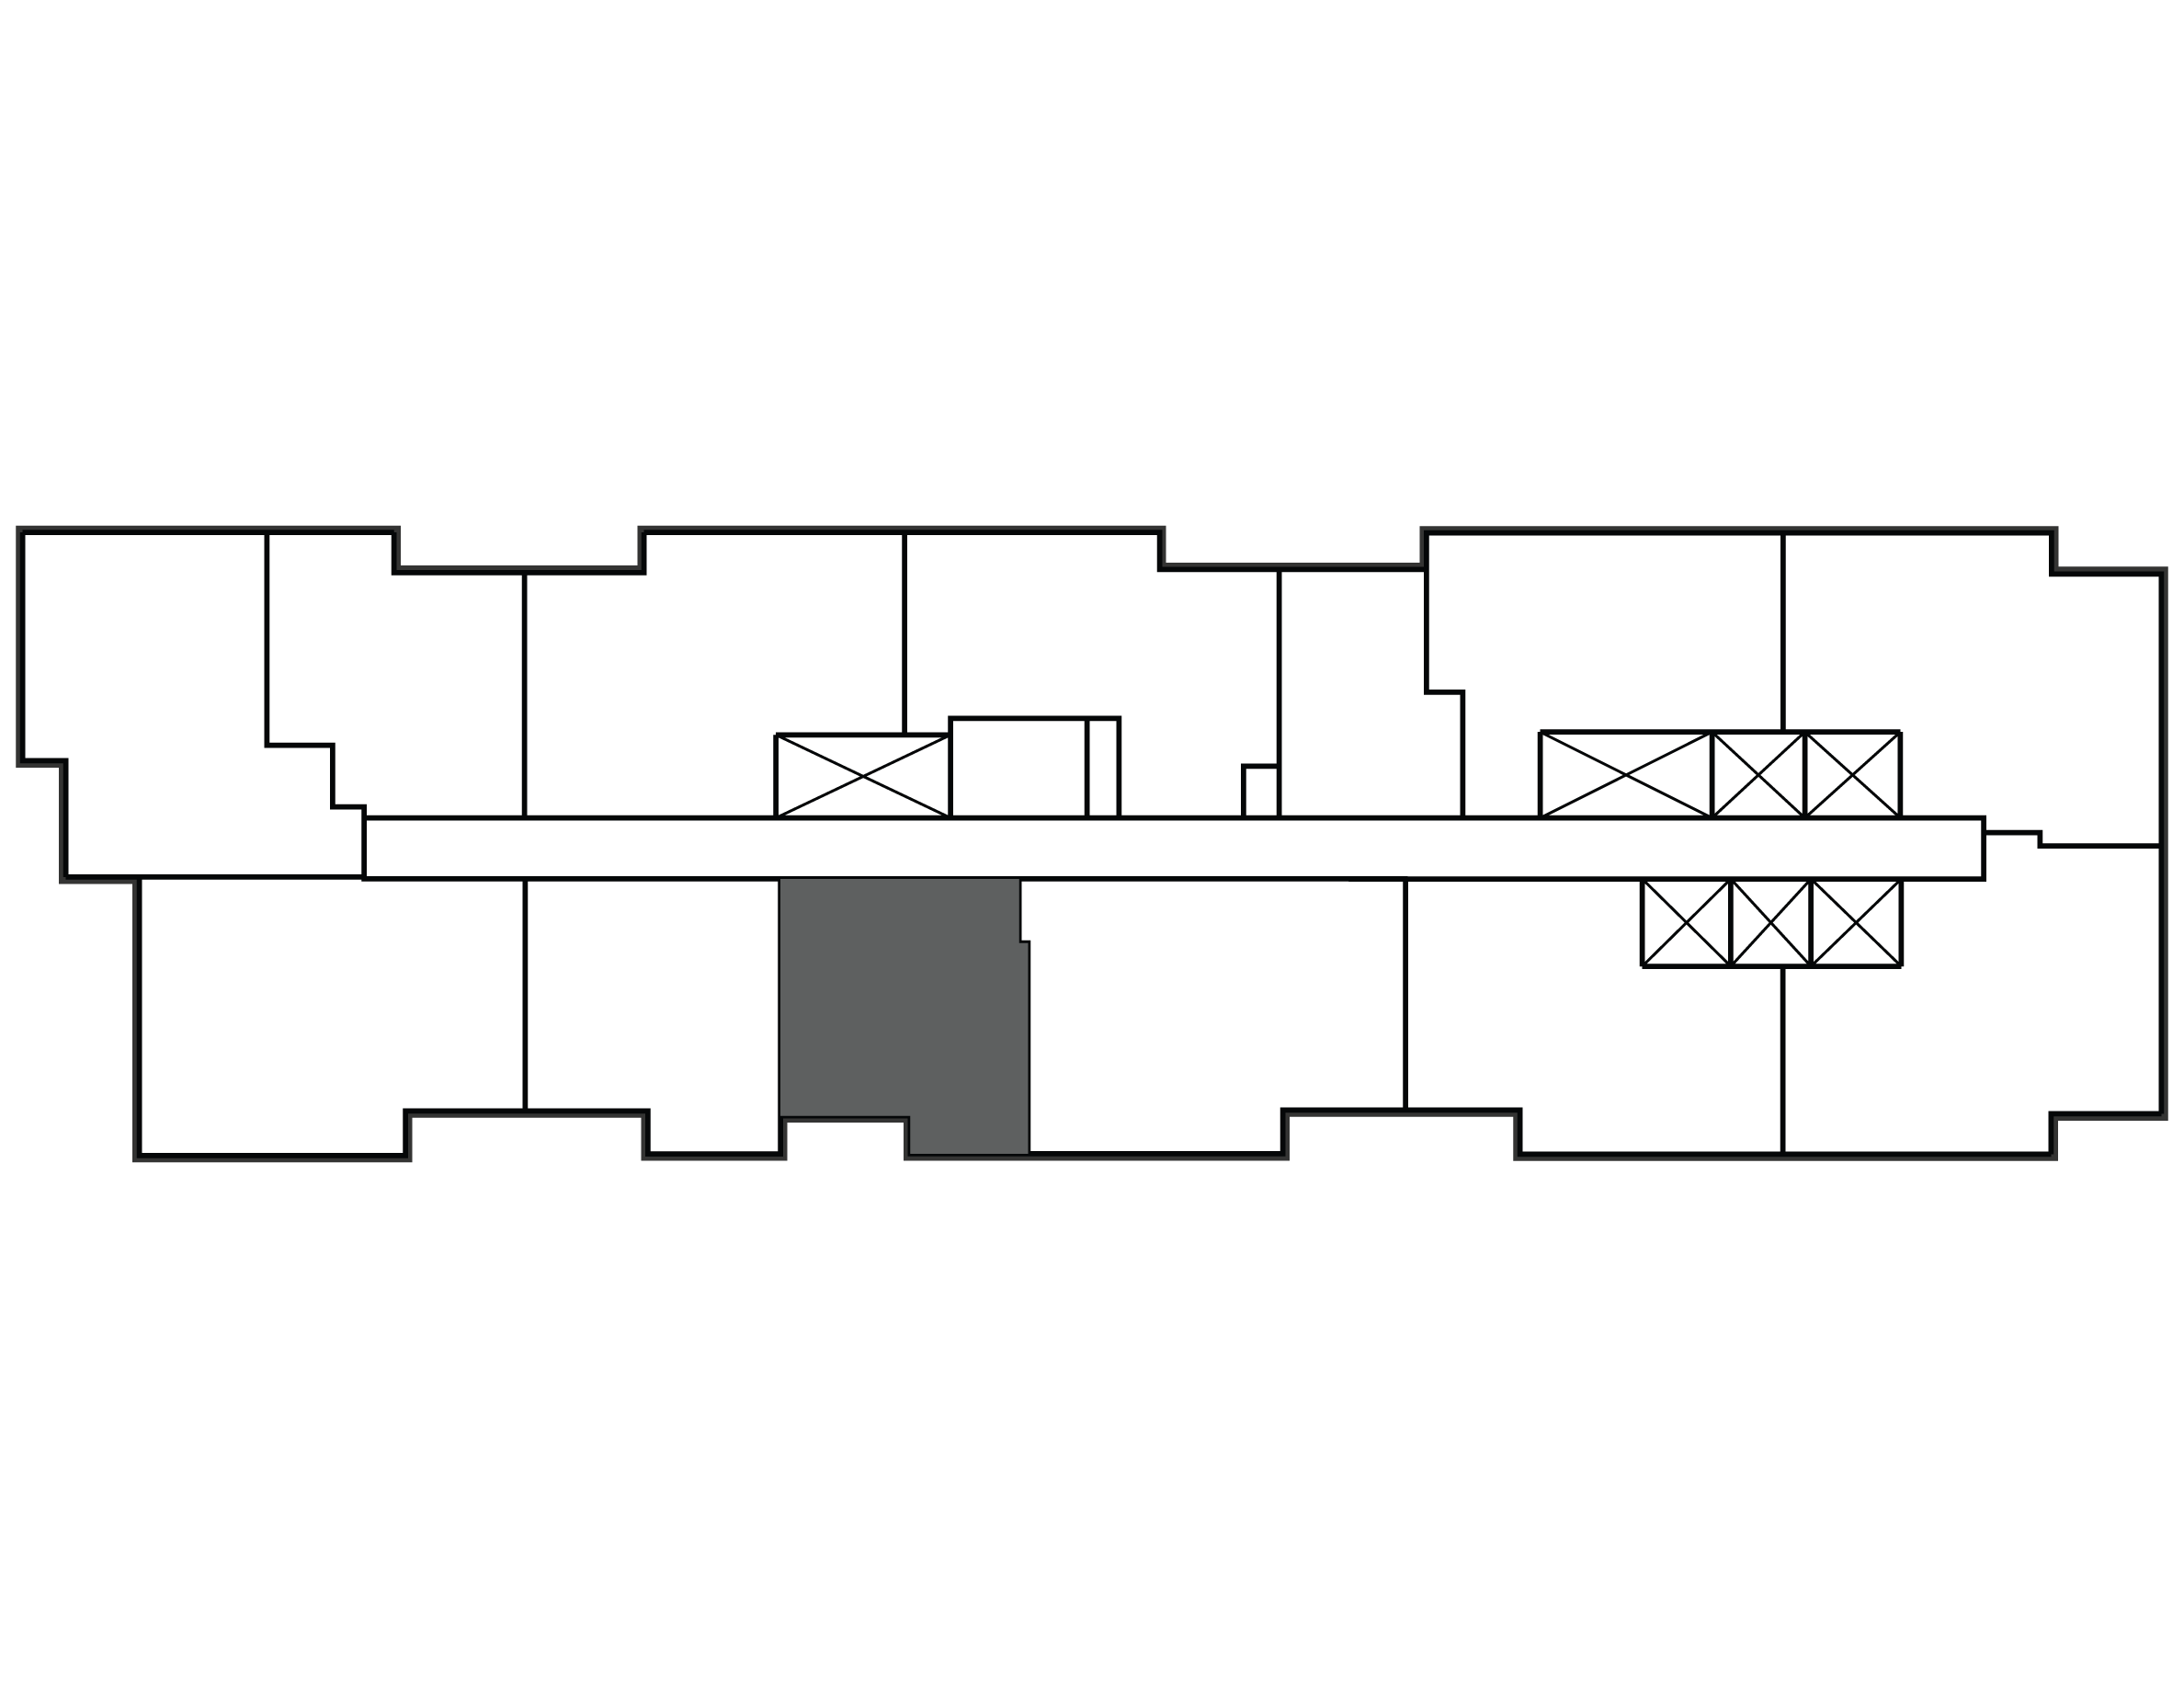 Key plan image of apartment 1604